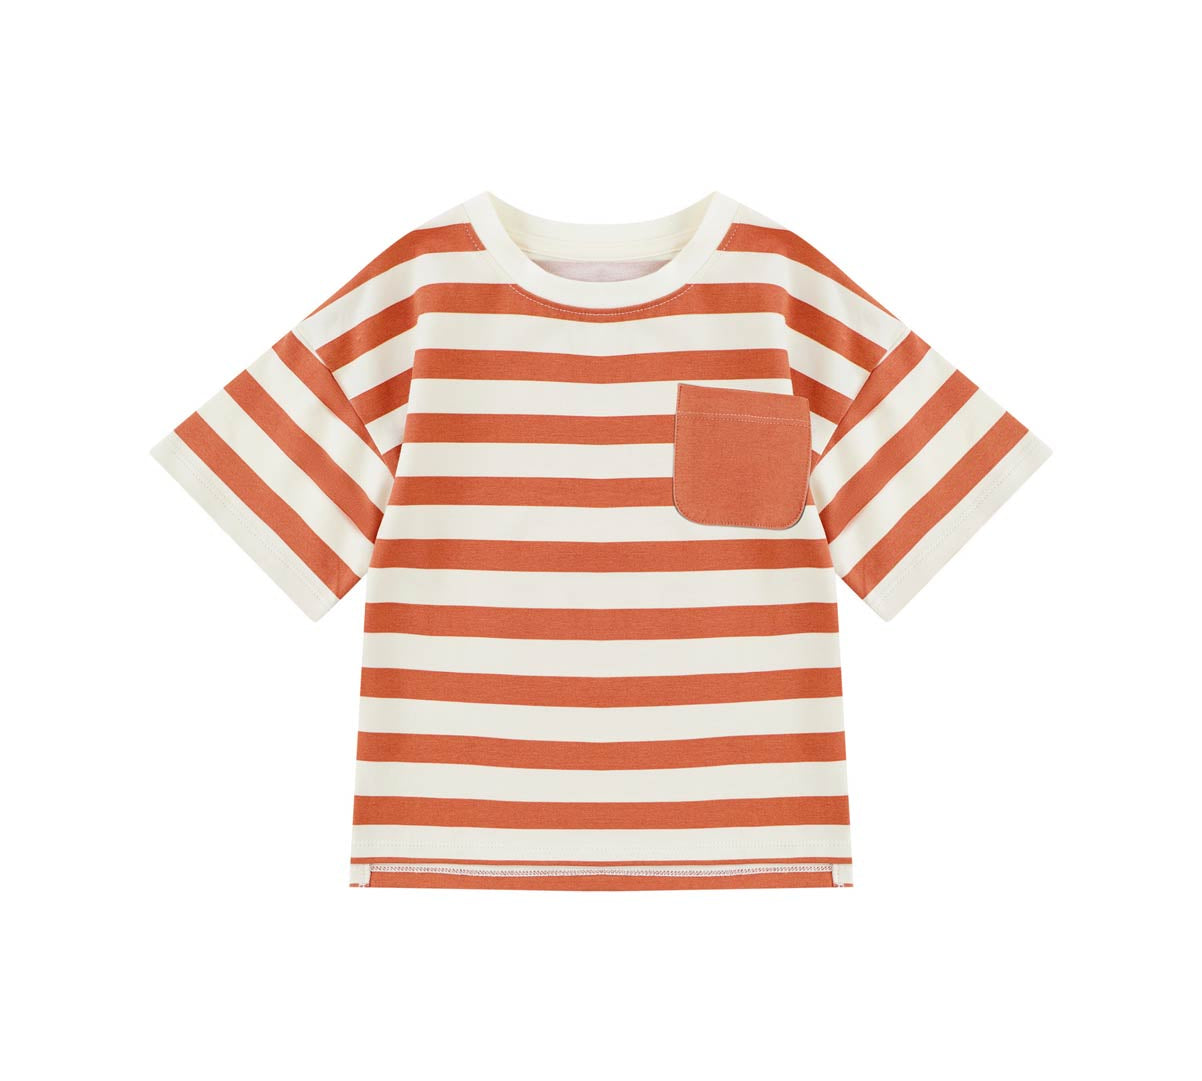 Toddler Organic Cotton T-shirt-Cream/Orange